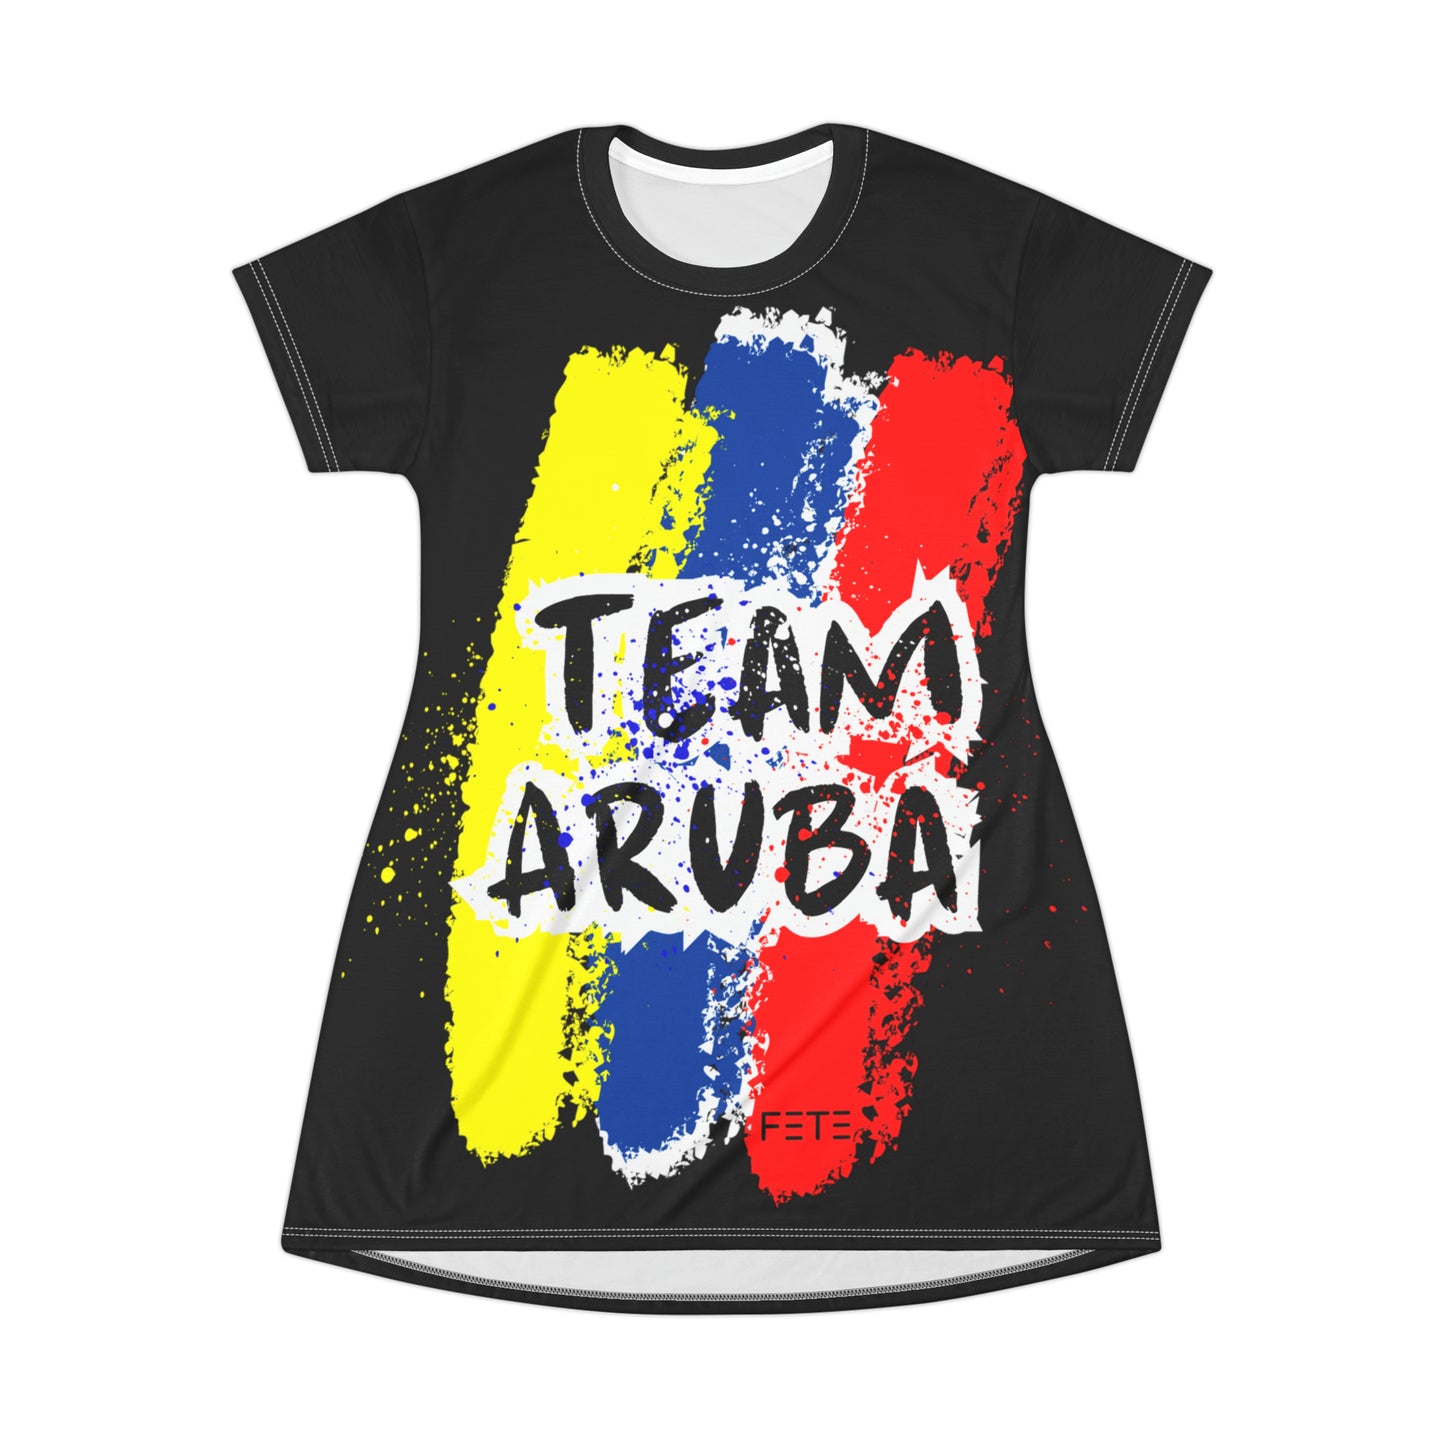 Team Aruba T-Shirt Dress (AOP) (black)